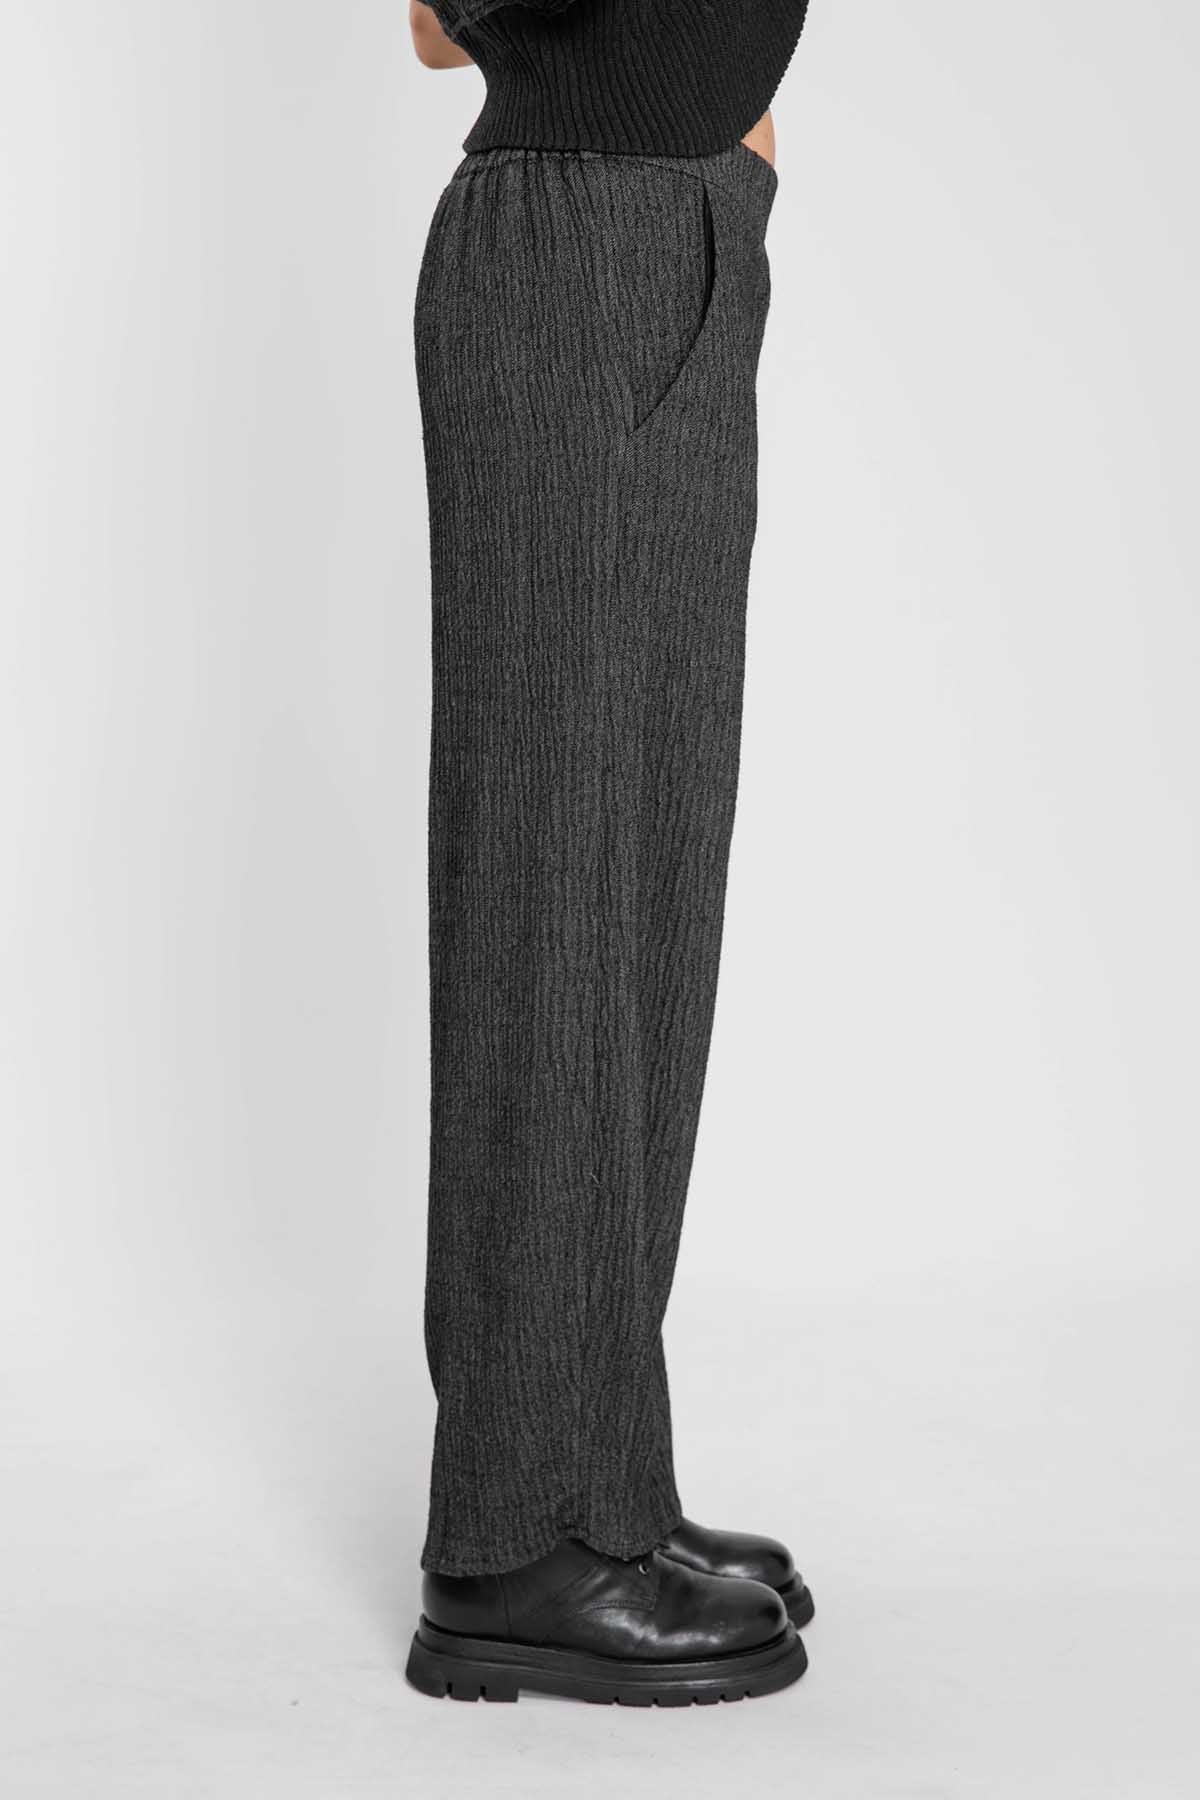 Crea Concept Geniş Paça Gofre Pantolon-Libas Trendy Fashion Store